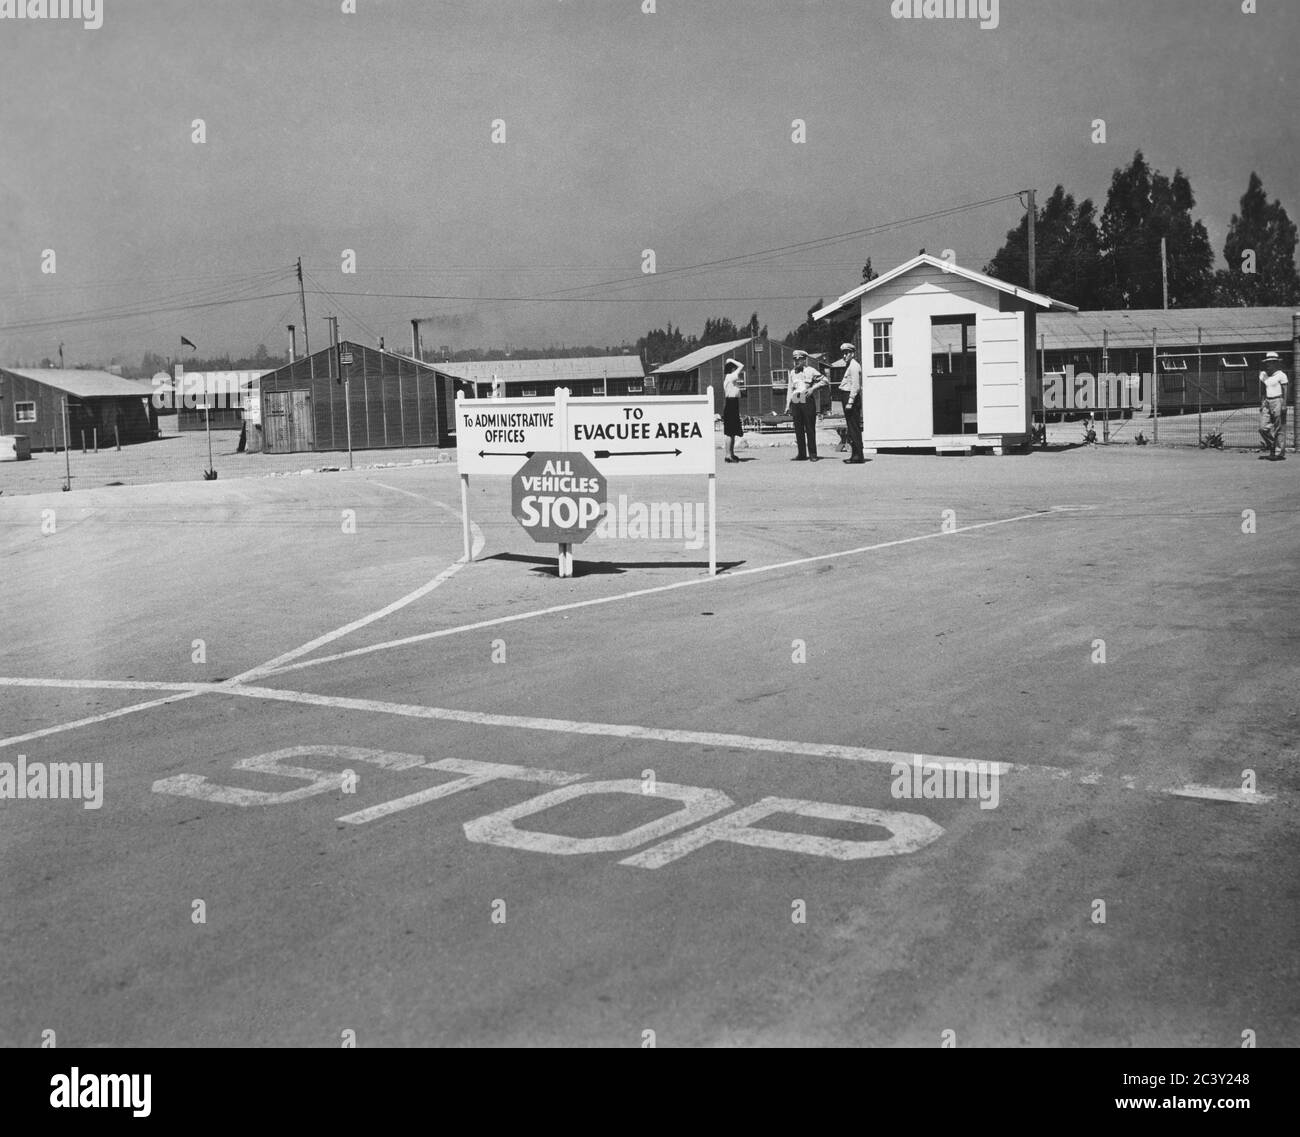 Centro di assemblaggio per gli evacuati di Ancestry Giapponese, Pomona, California, USA, U.S. Army Signal Corps, 1942 Foto Stock